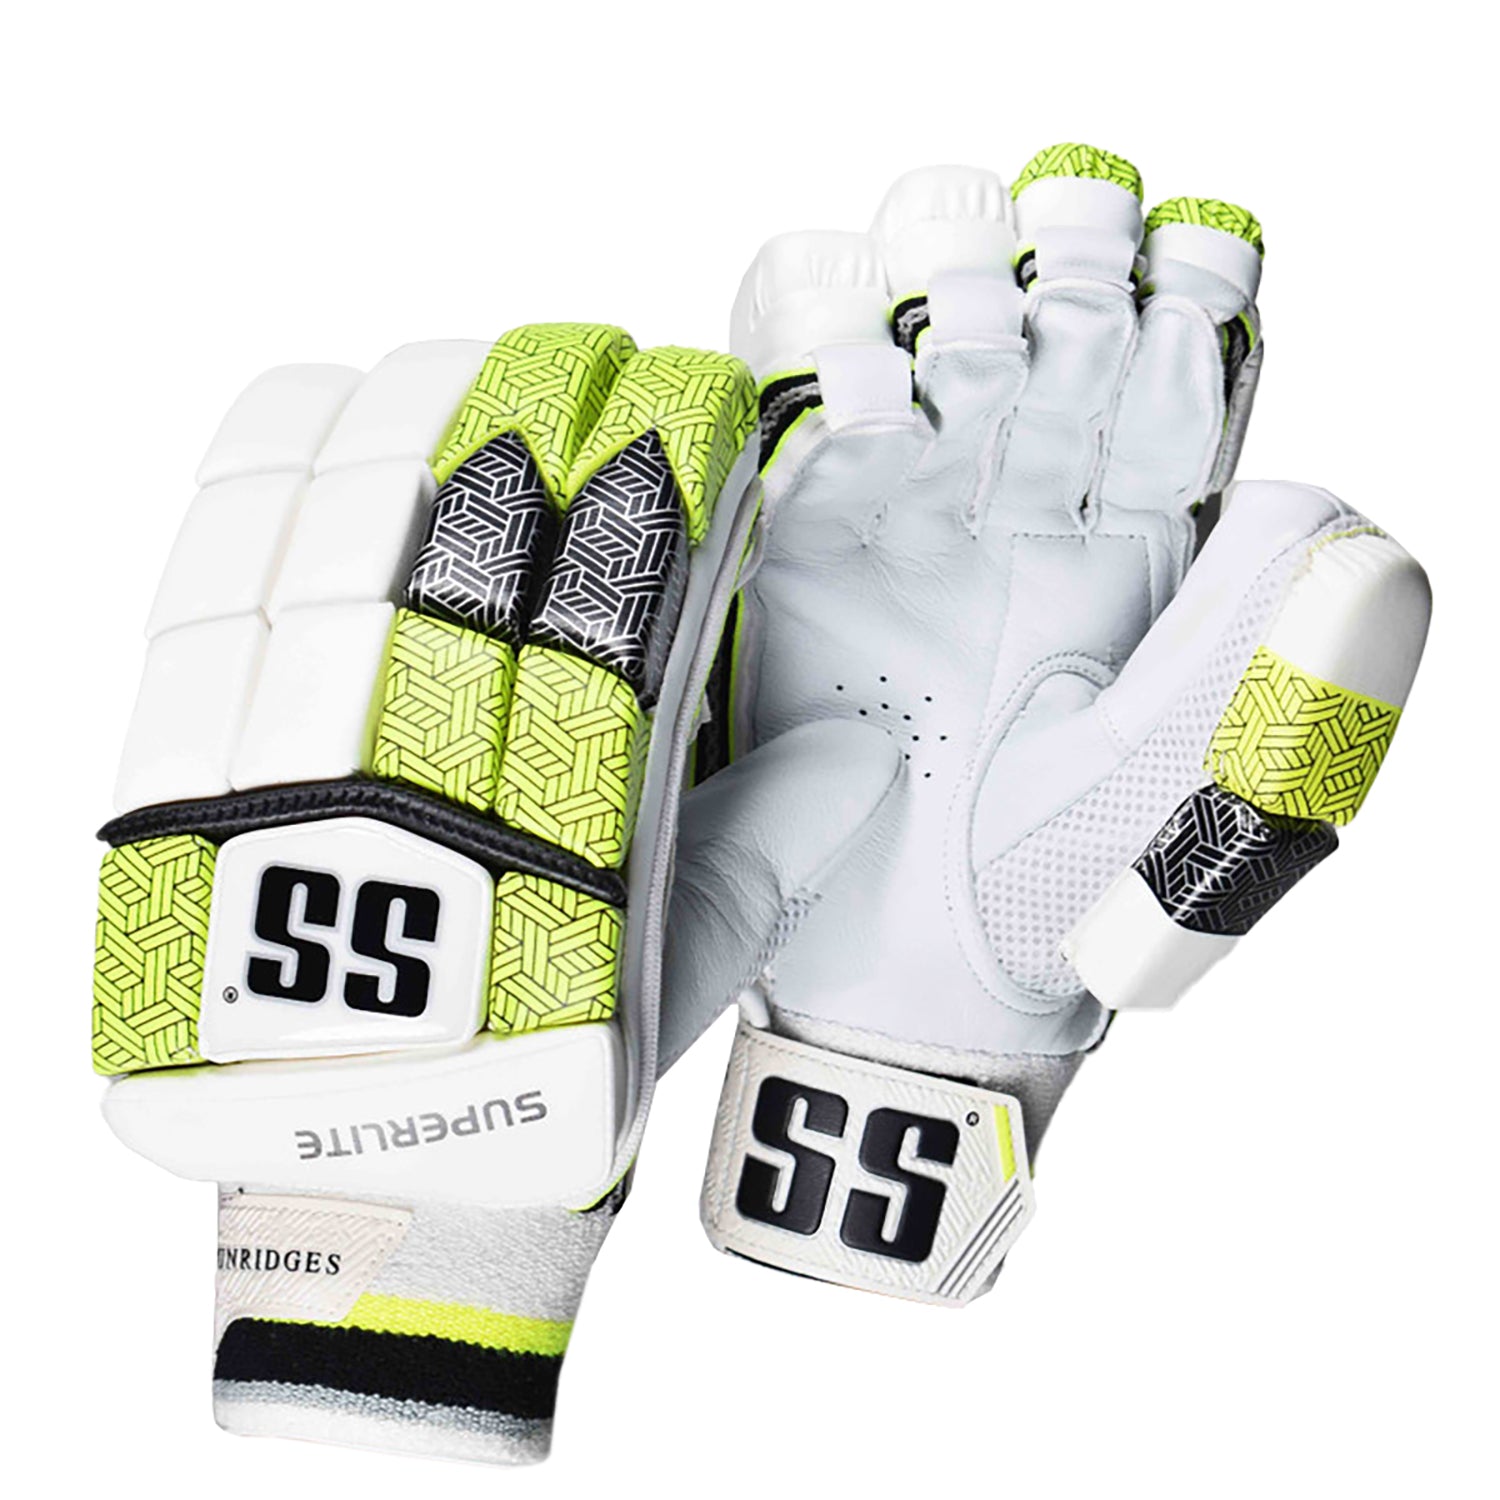 SS Super Lite RH Batting Gloves, White/Green - Best Price online Prokicksports.com